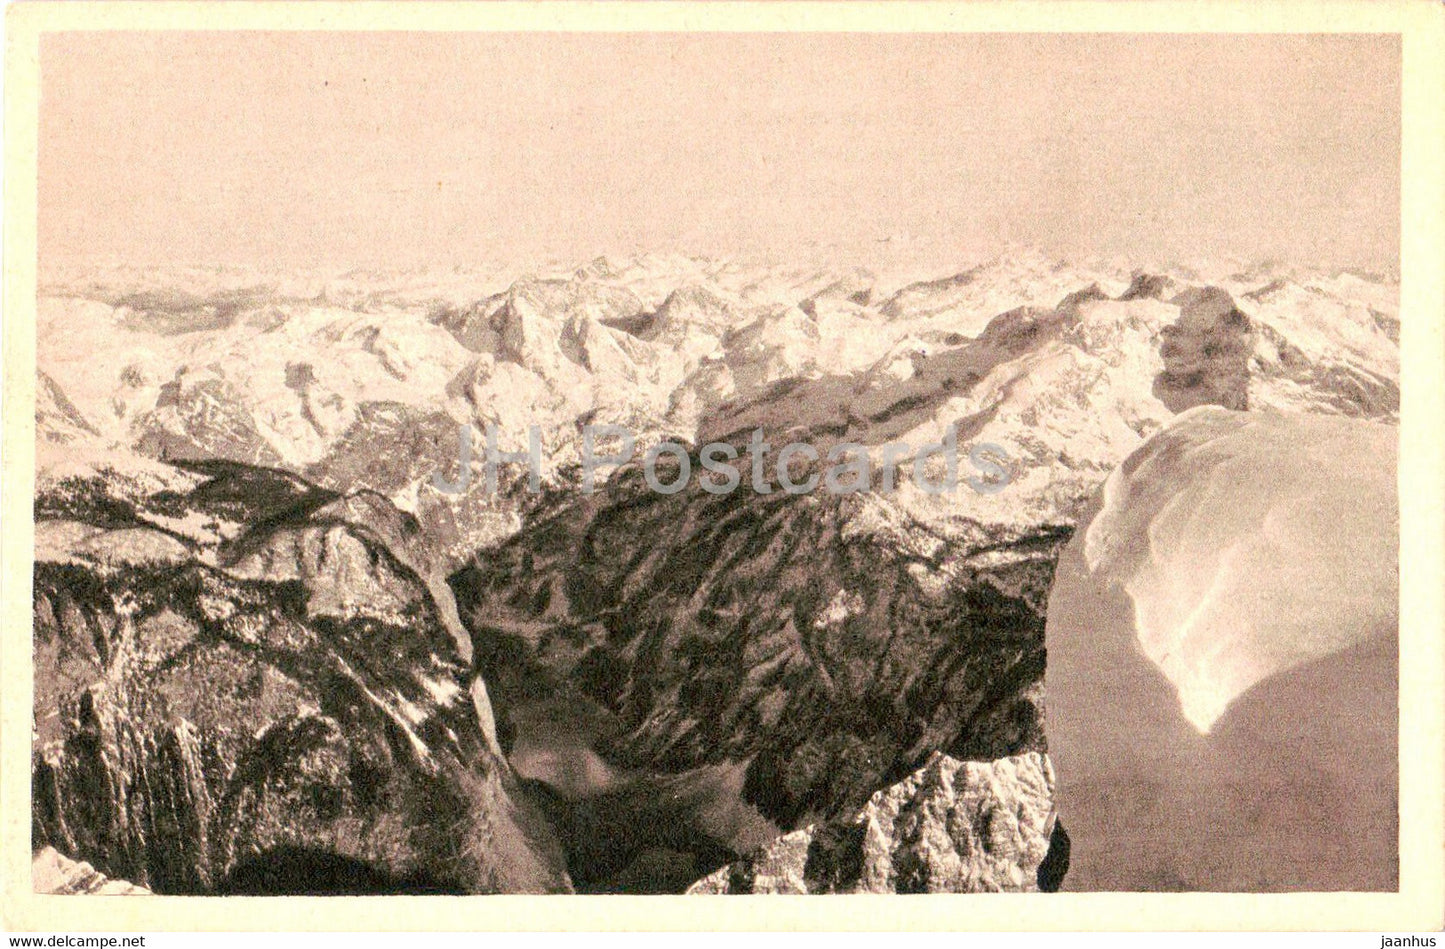 Blick vom Watzmann Hocheck auf Konigssee und Funtensee - old postcard - Germany - used - JH Postcards